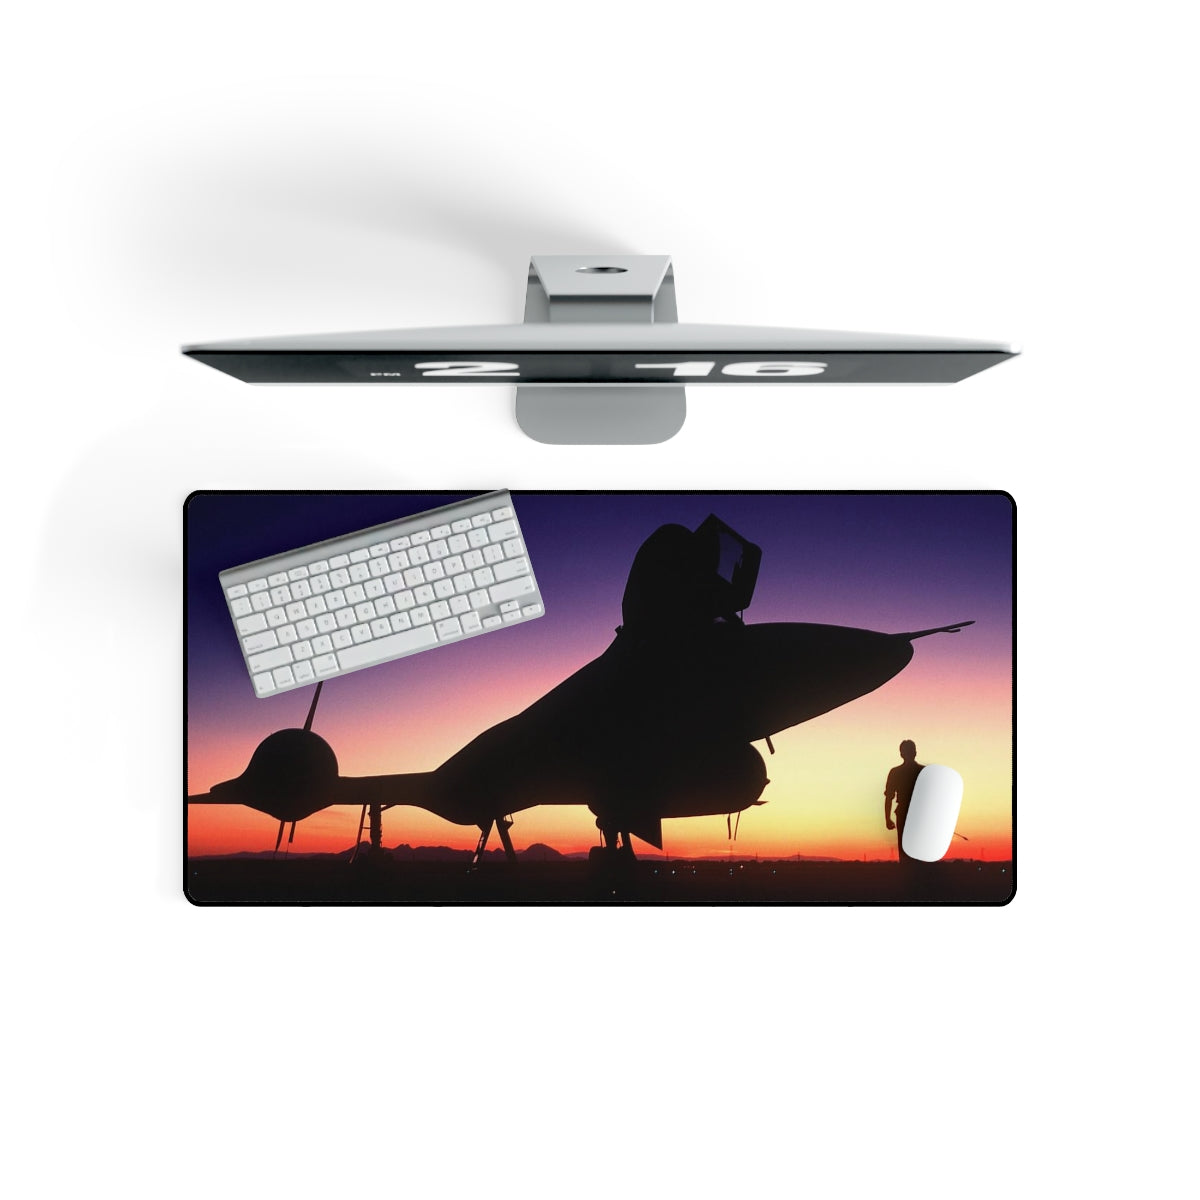 SR-71 "Blackbird" Sunset Desk Mat - I Love a Hangar